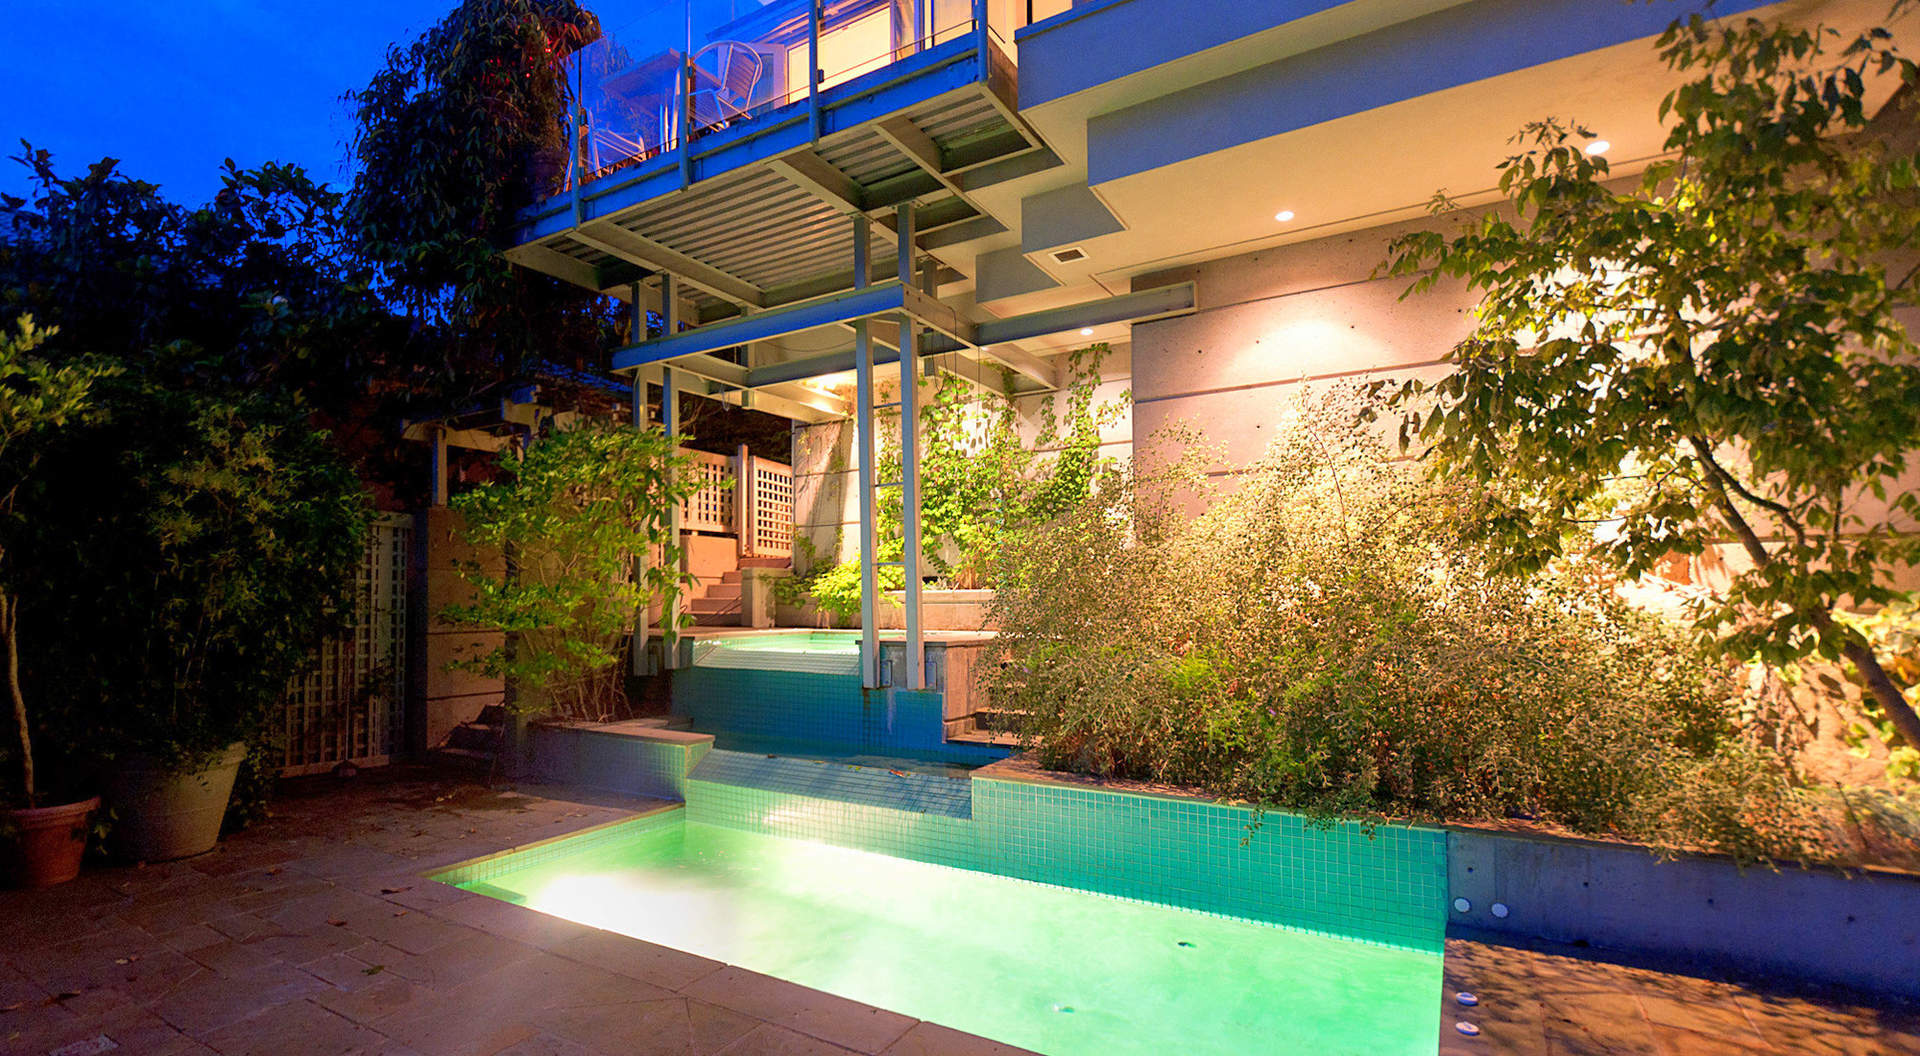 Fabuloso exterior Plunge Pool & Hot Tub